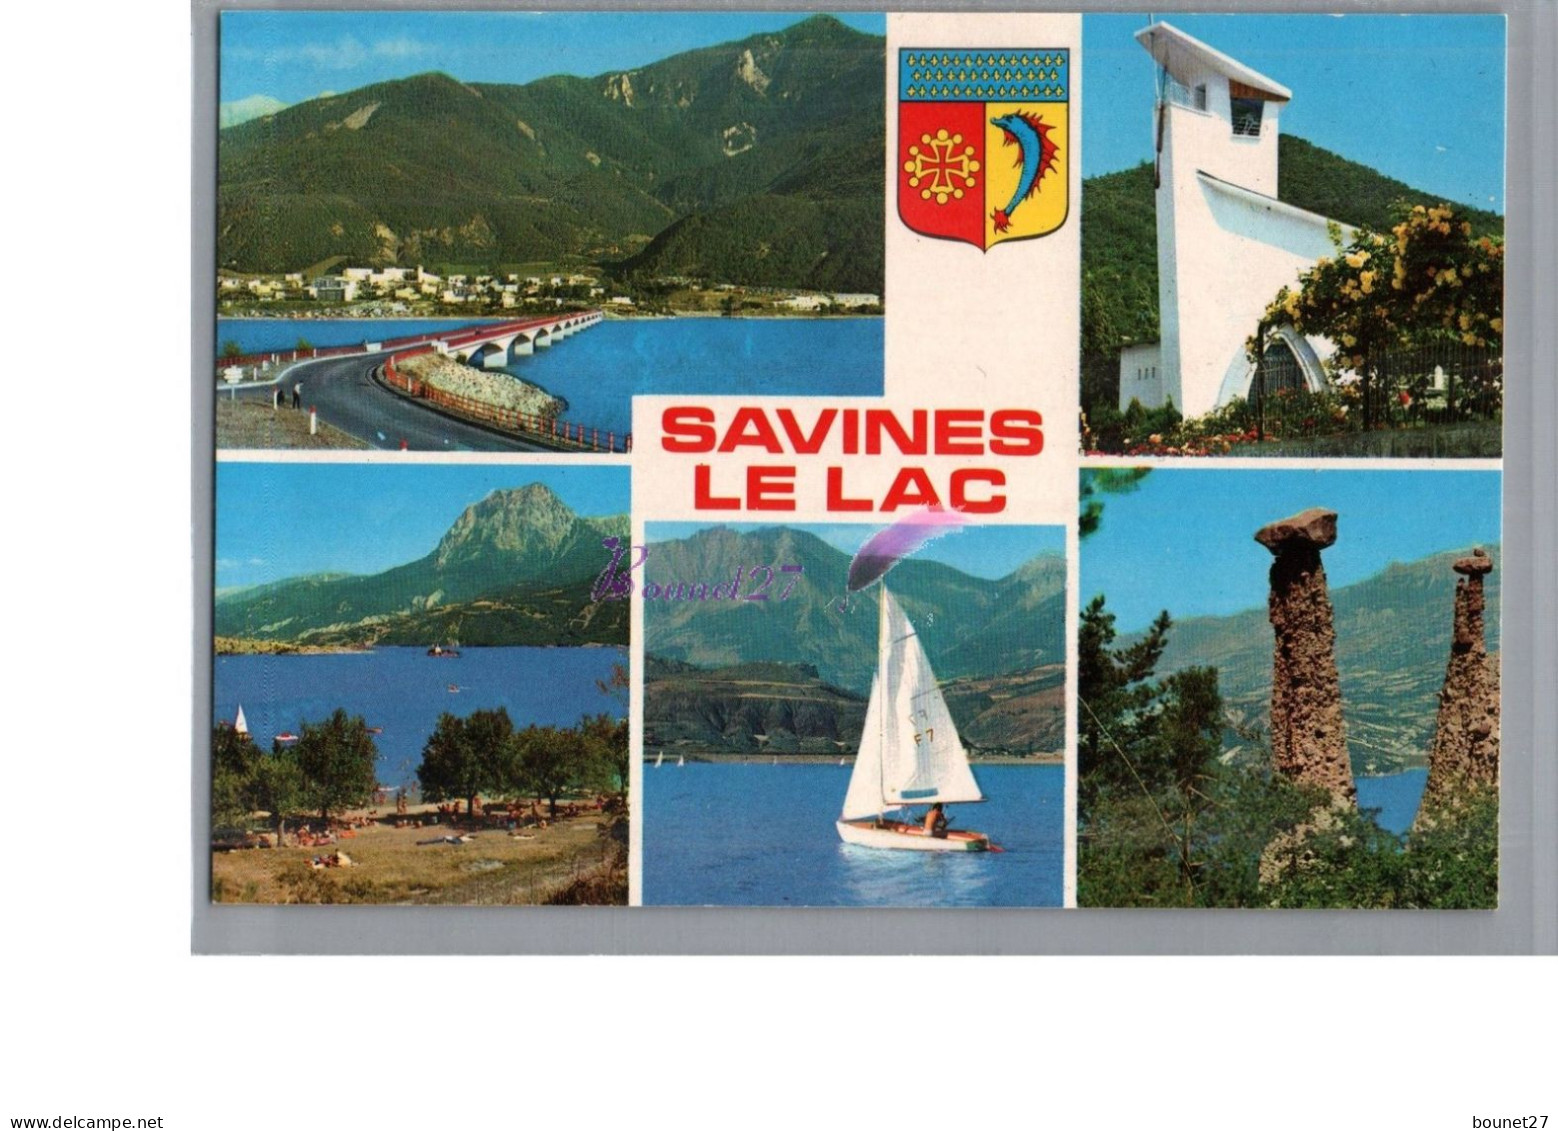 SAVINES LE LAC - SERRE PONCON 05 - Le Lac De Serre Ponçon  Ville Touristique - Serre Chevalier